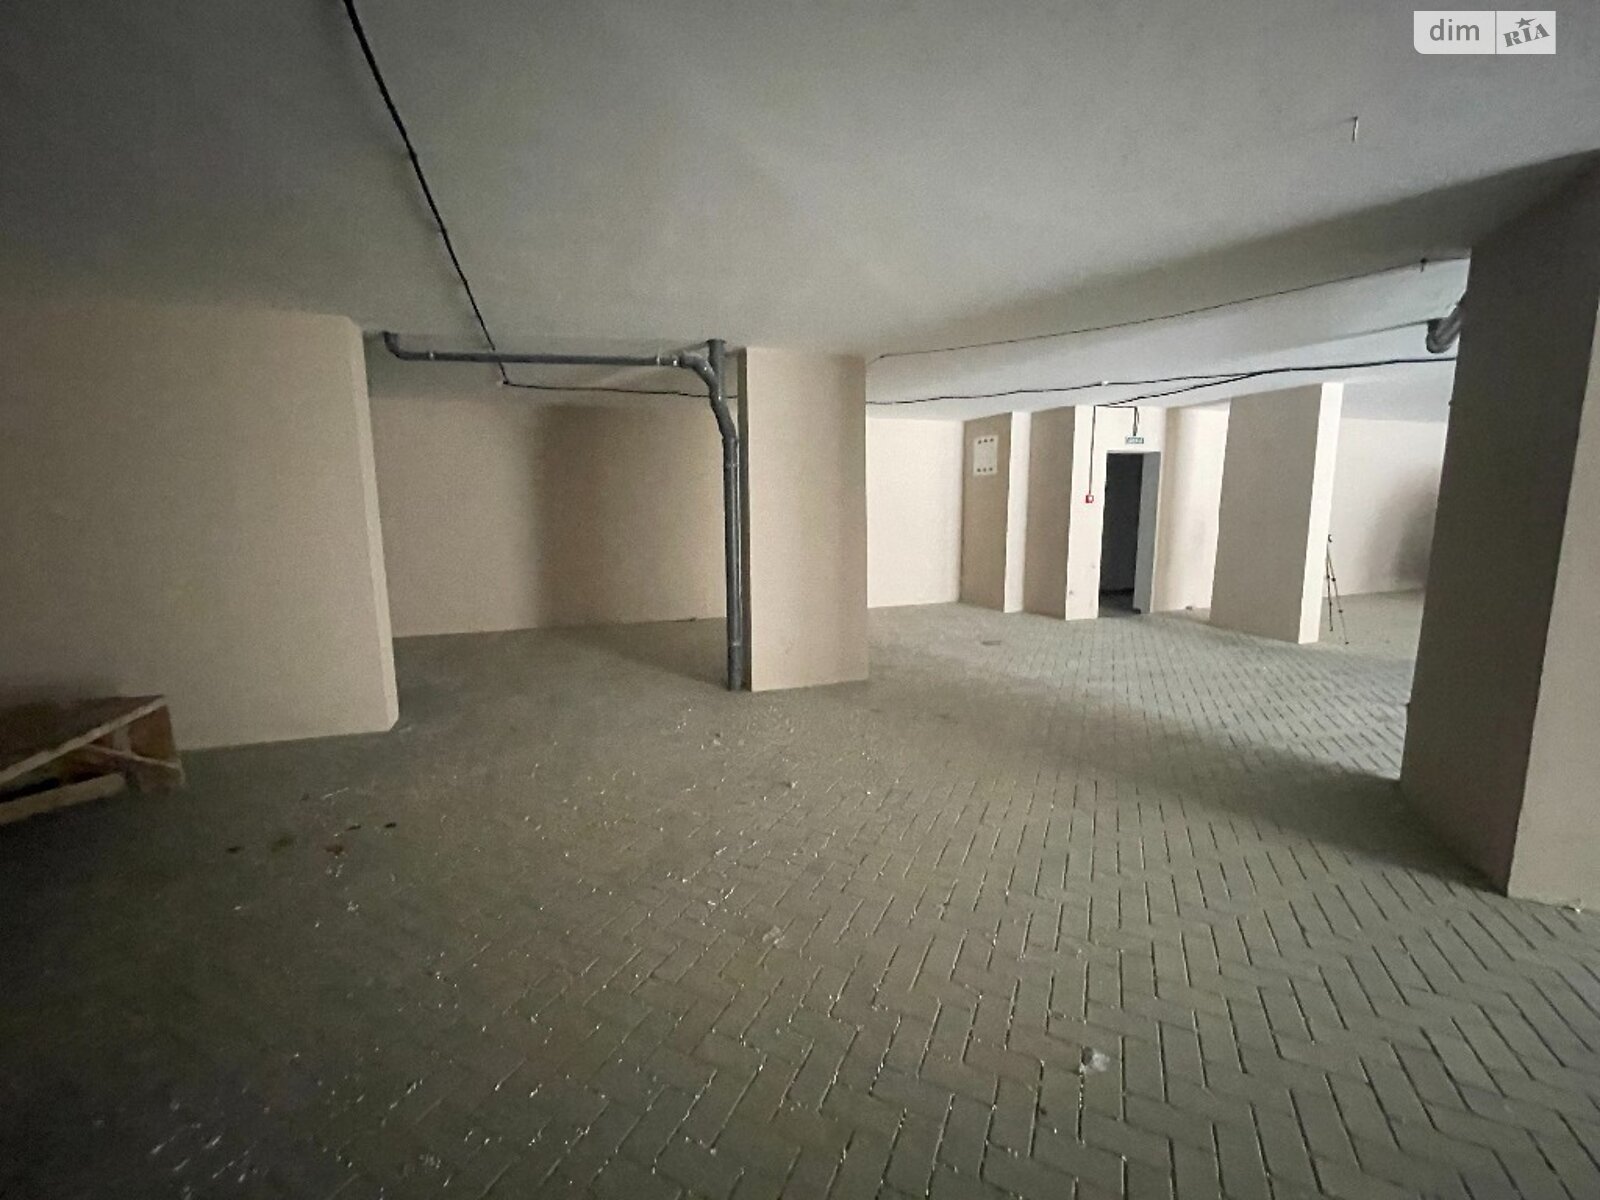 Место в подземном паркинге под легковое авто в Одессе, площадь 38.71 кв.м. фото 1